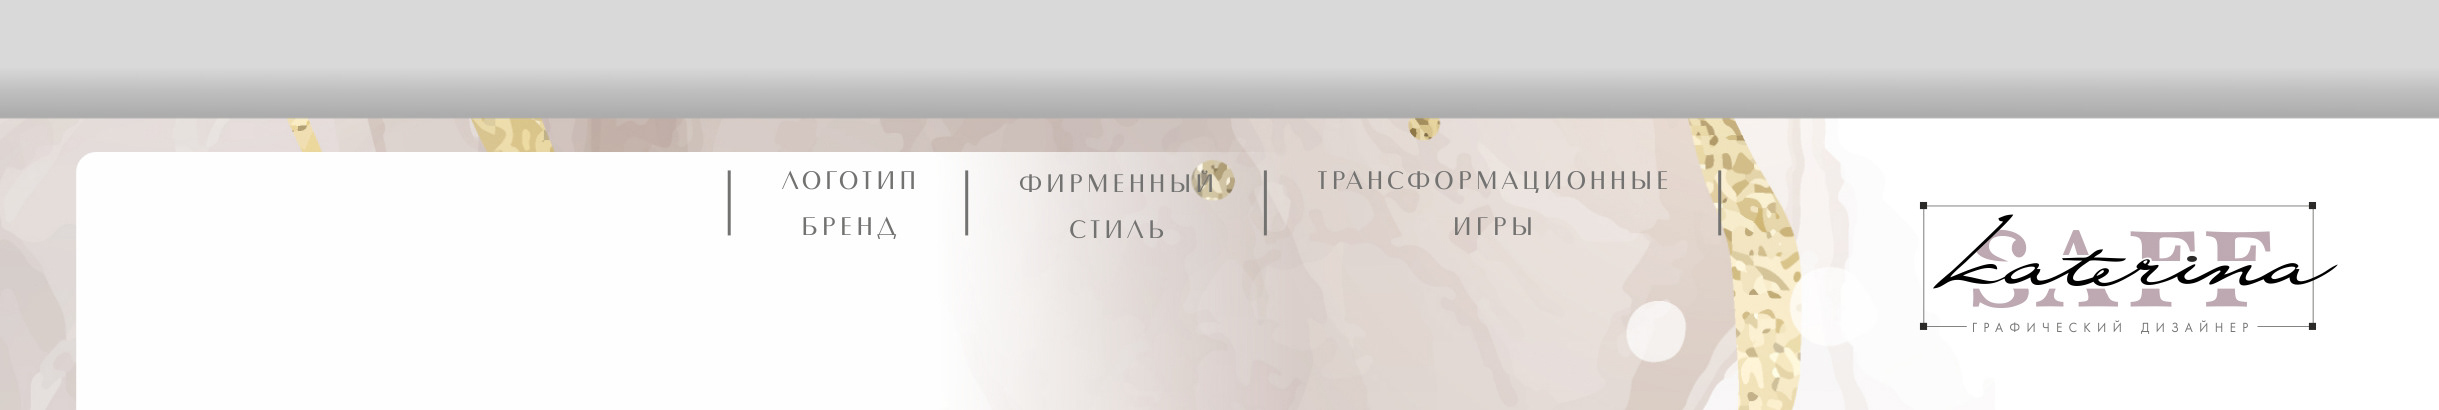 Profil-Banner von Екатерина Сафронова